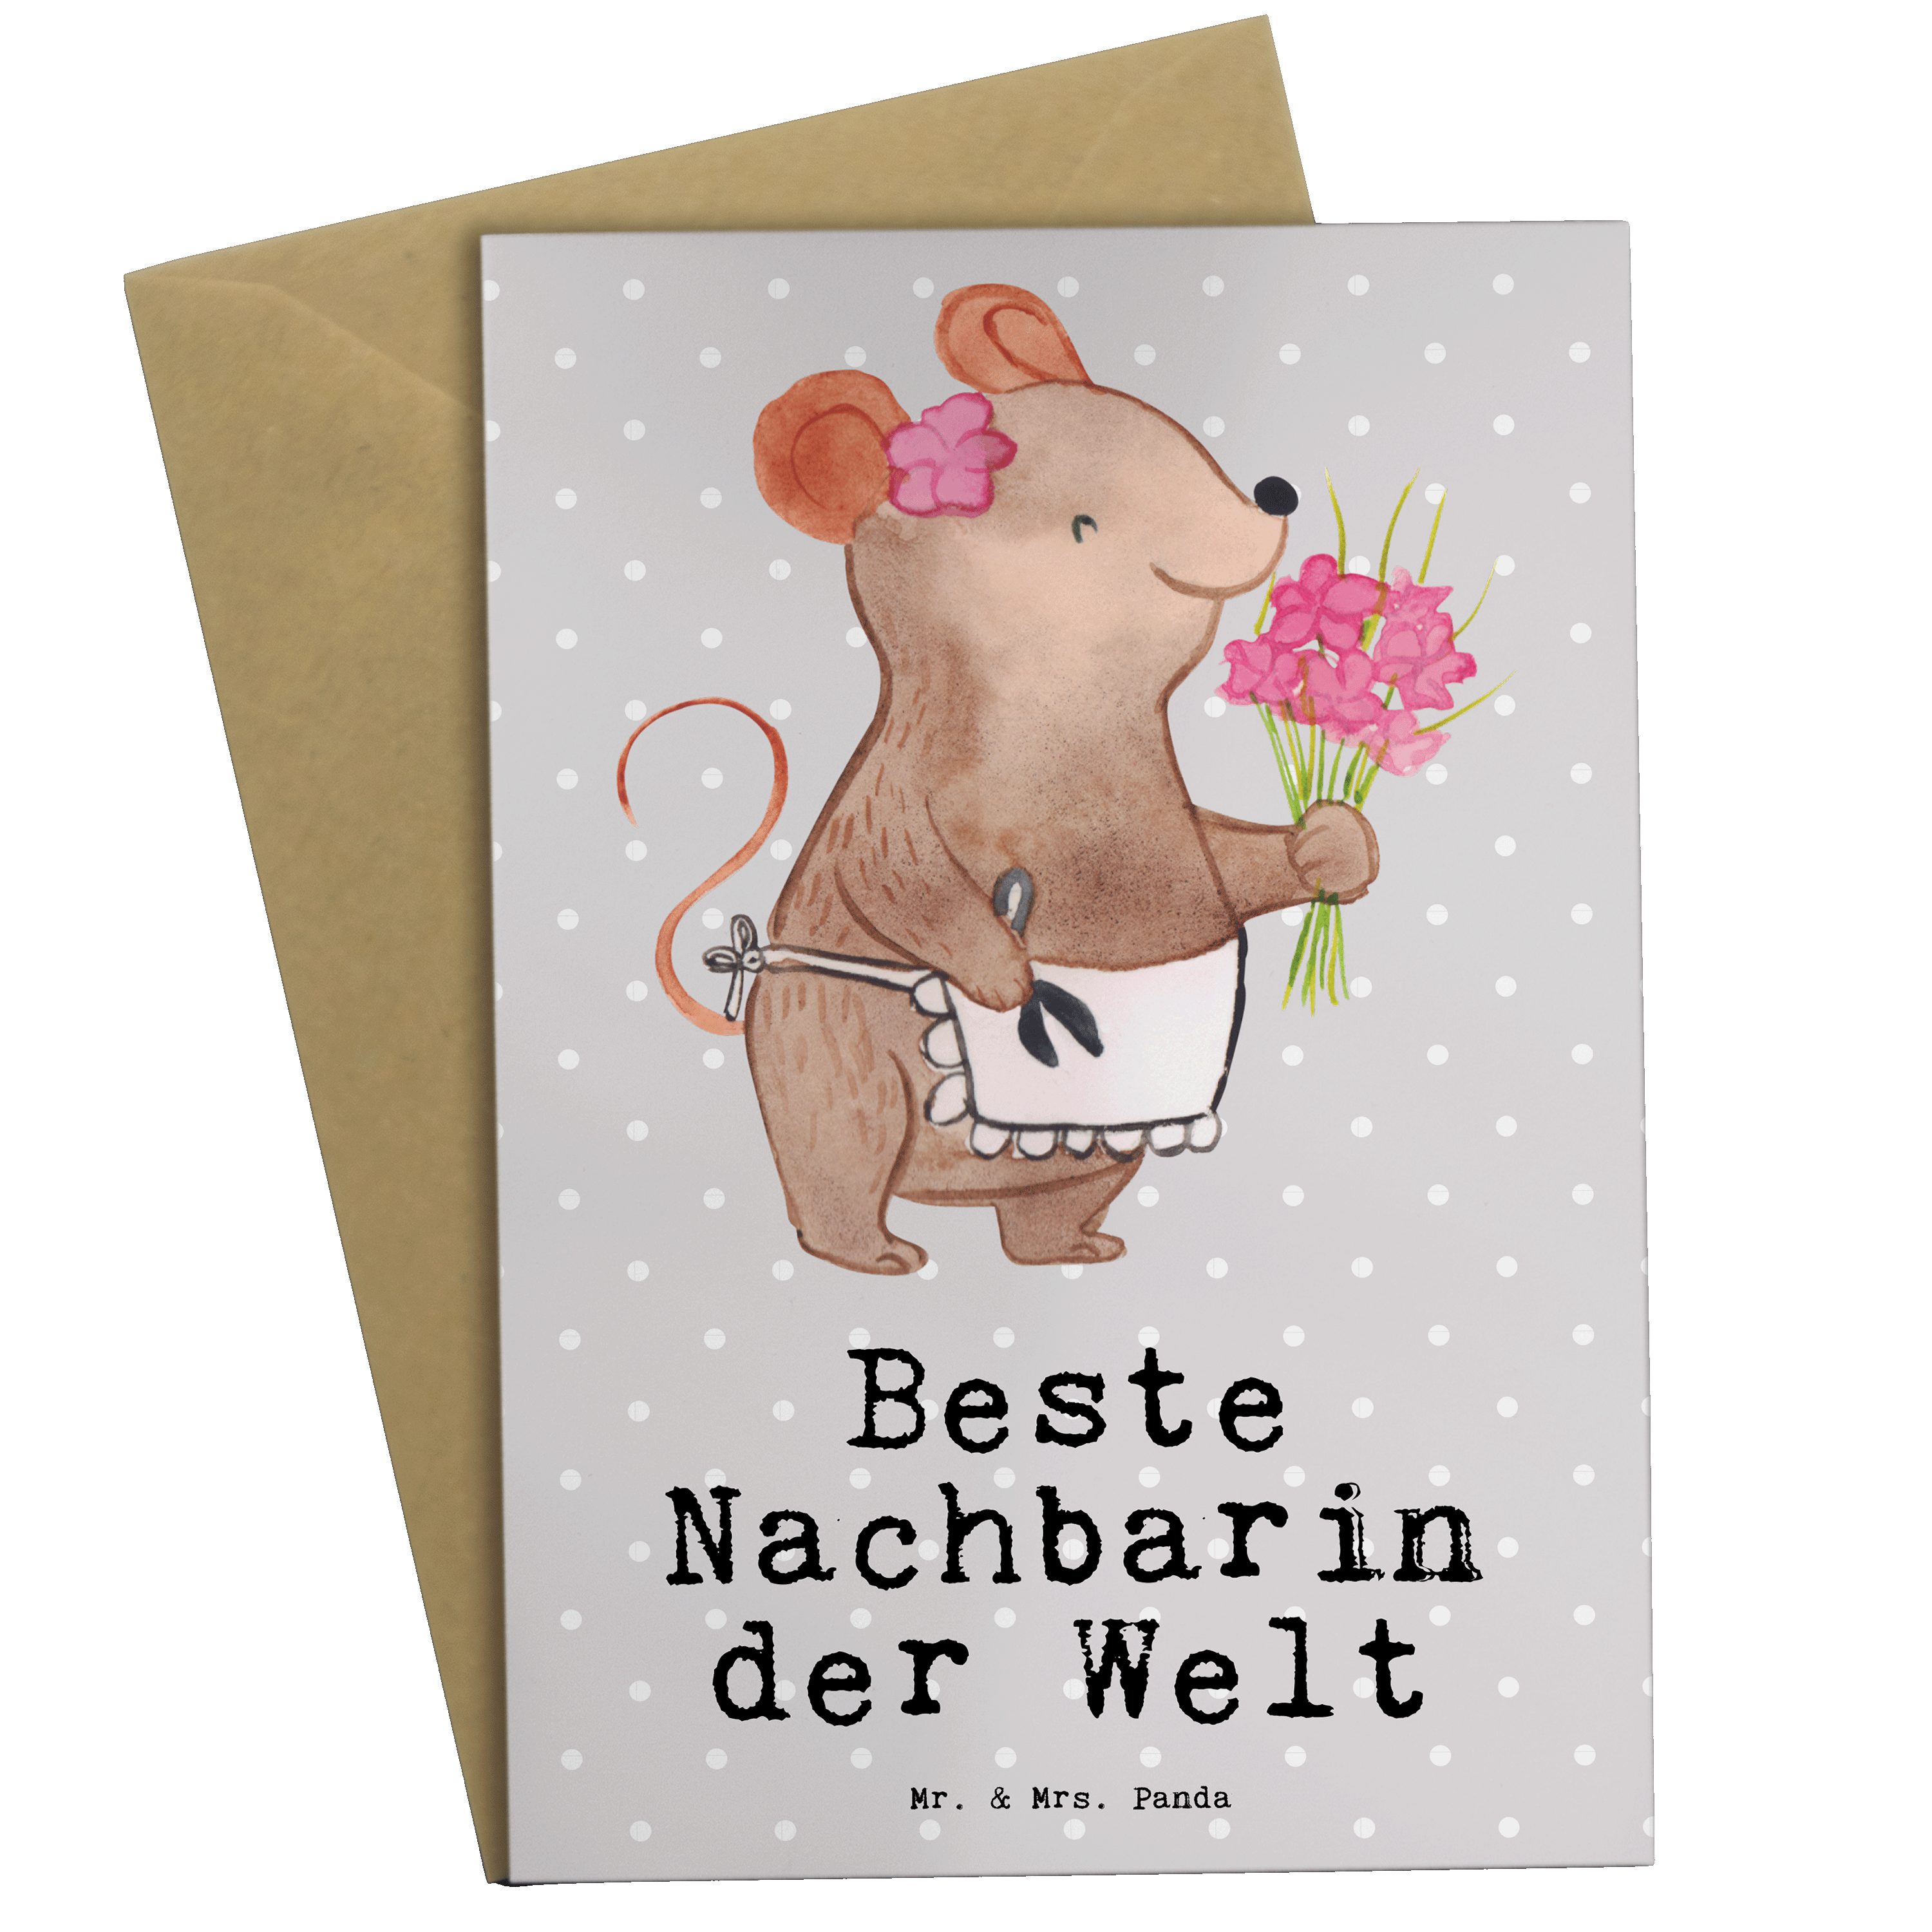 Mr. & Mrs. Panda Grußkarte Maus Beste Nachbarin der Welt - Grau Pastell - Geschenk, Klappkarte | Grußkarten